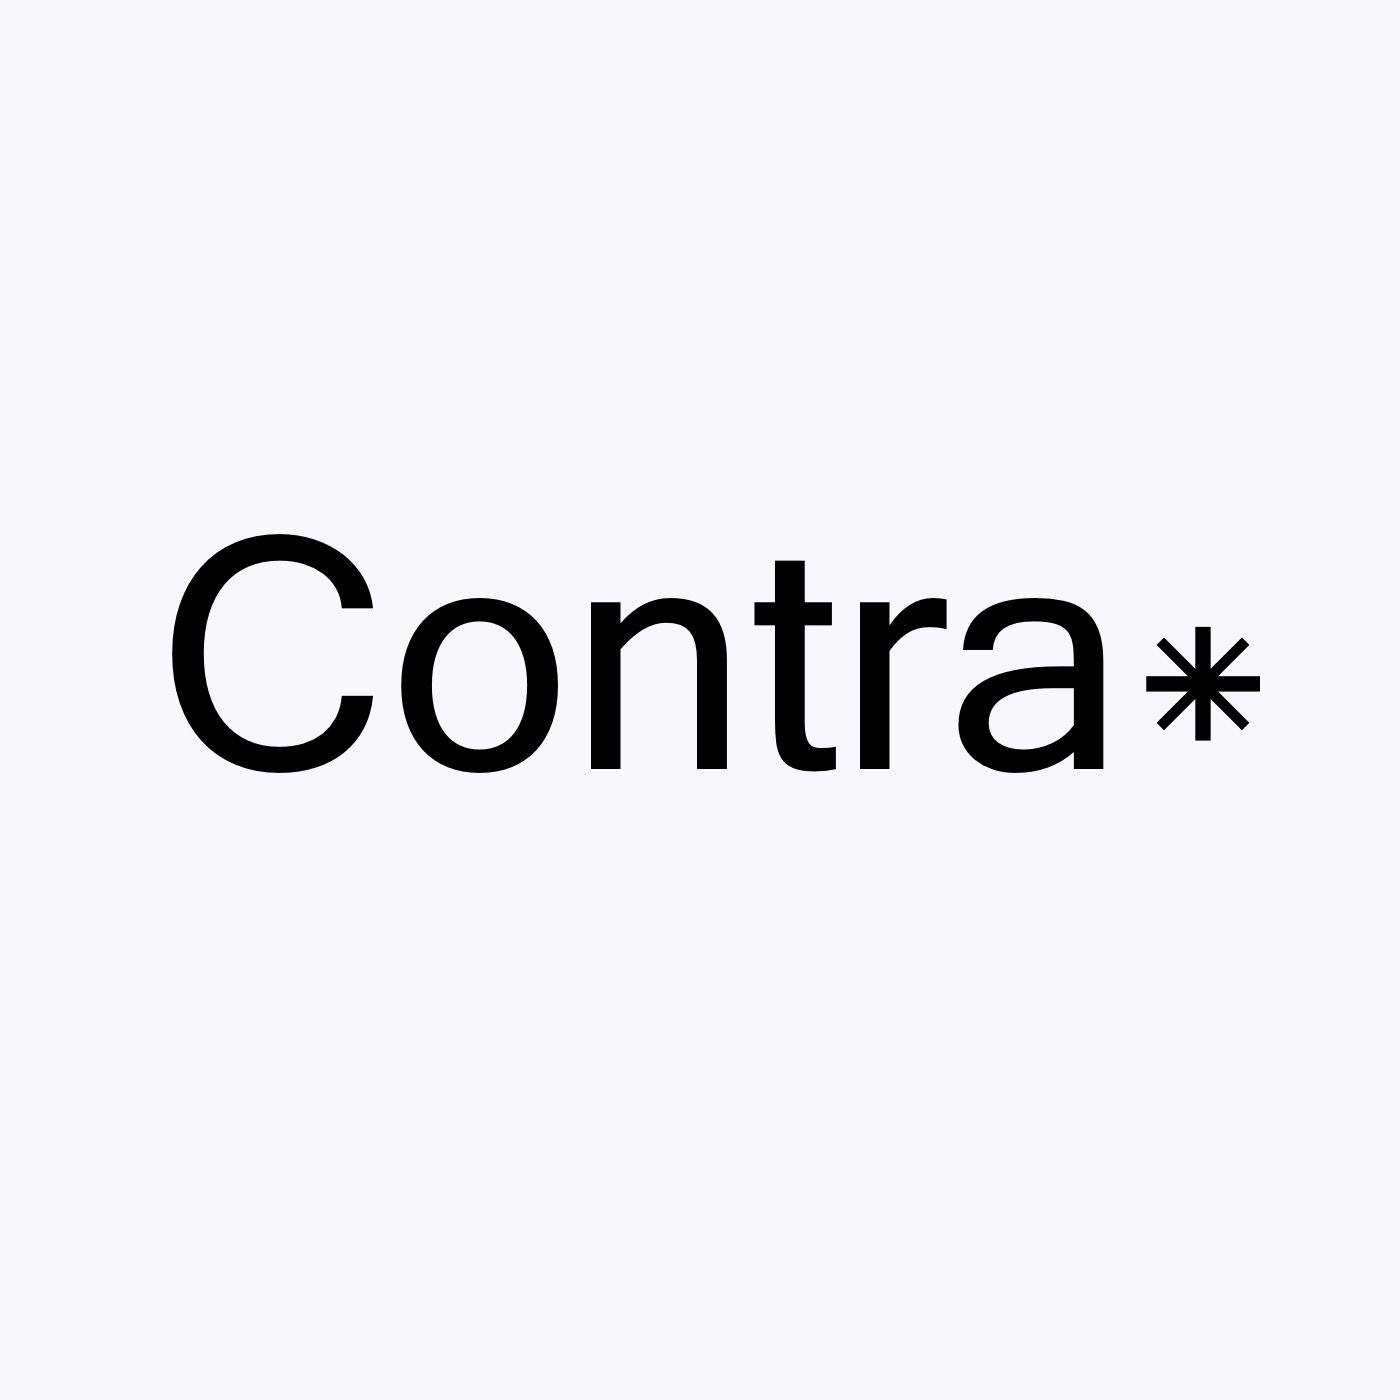 Contra Logo - Contra* podcast